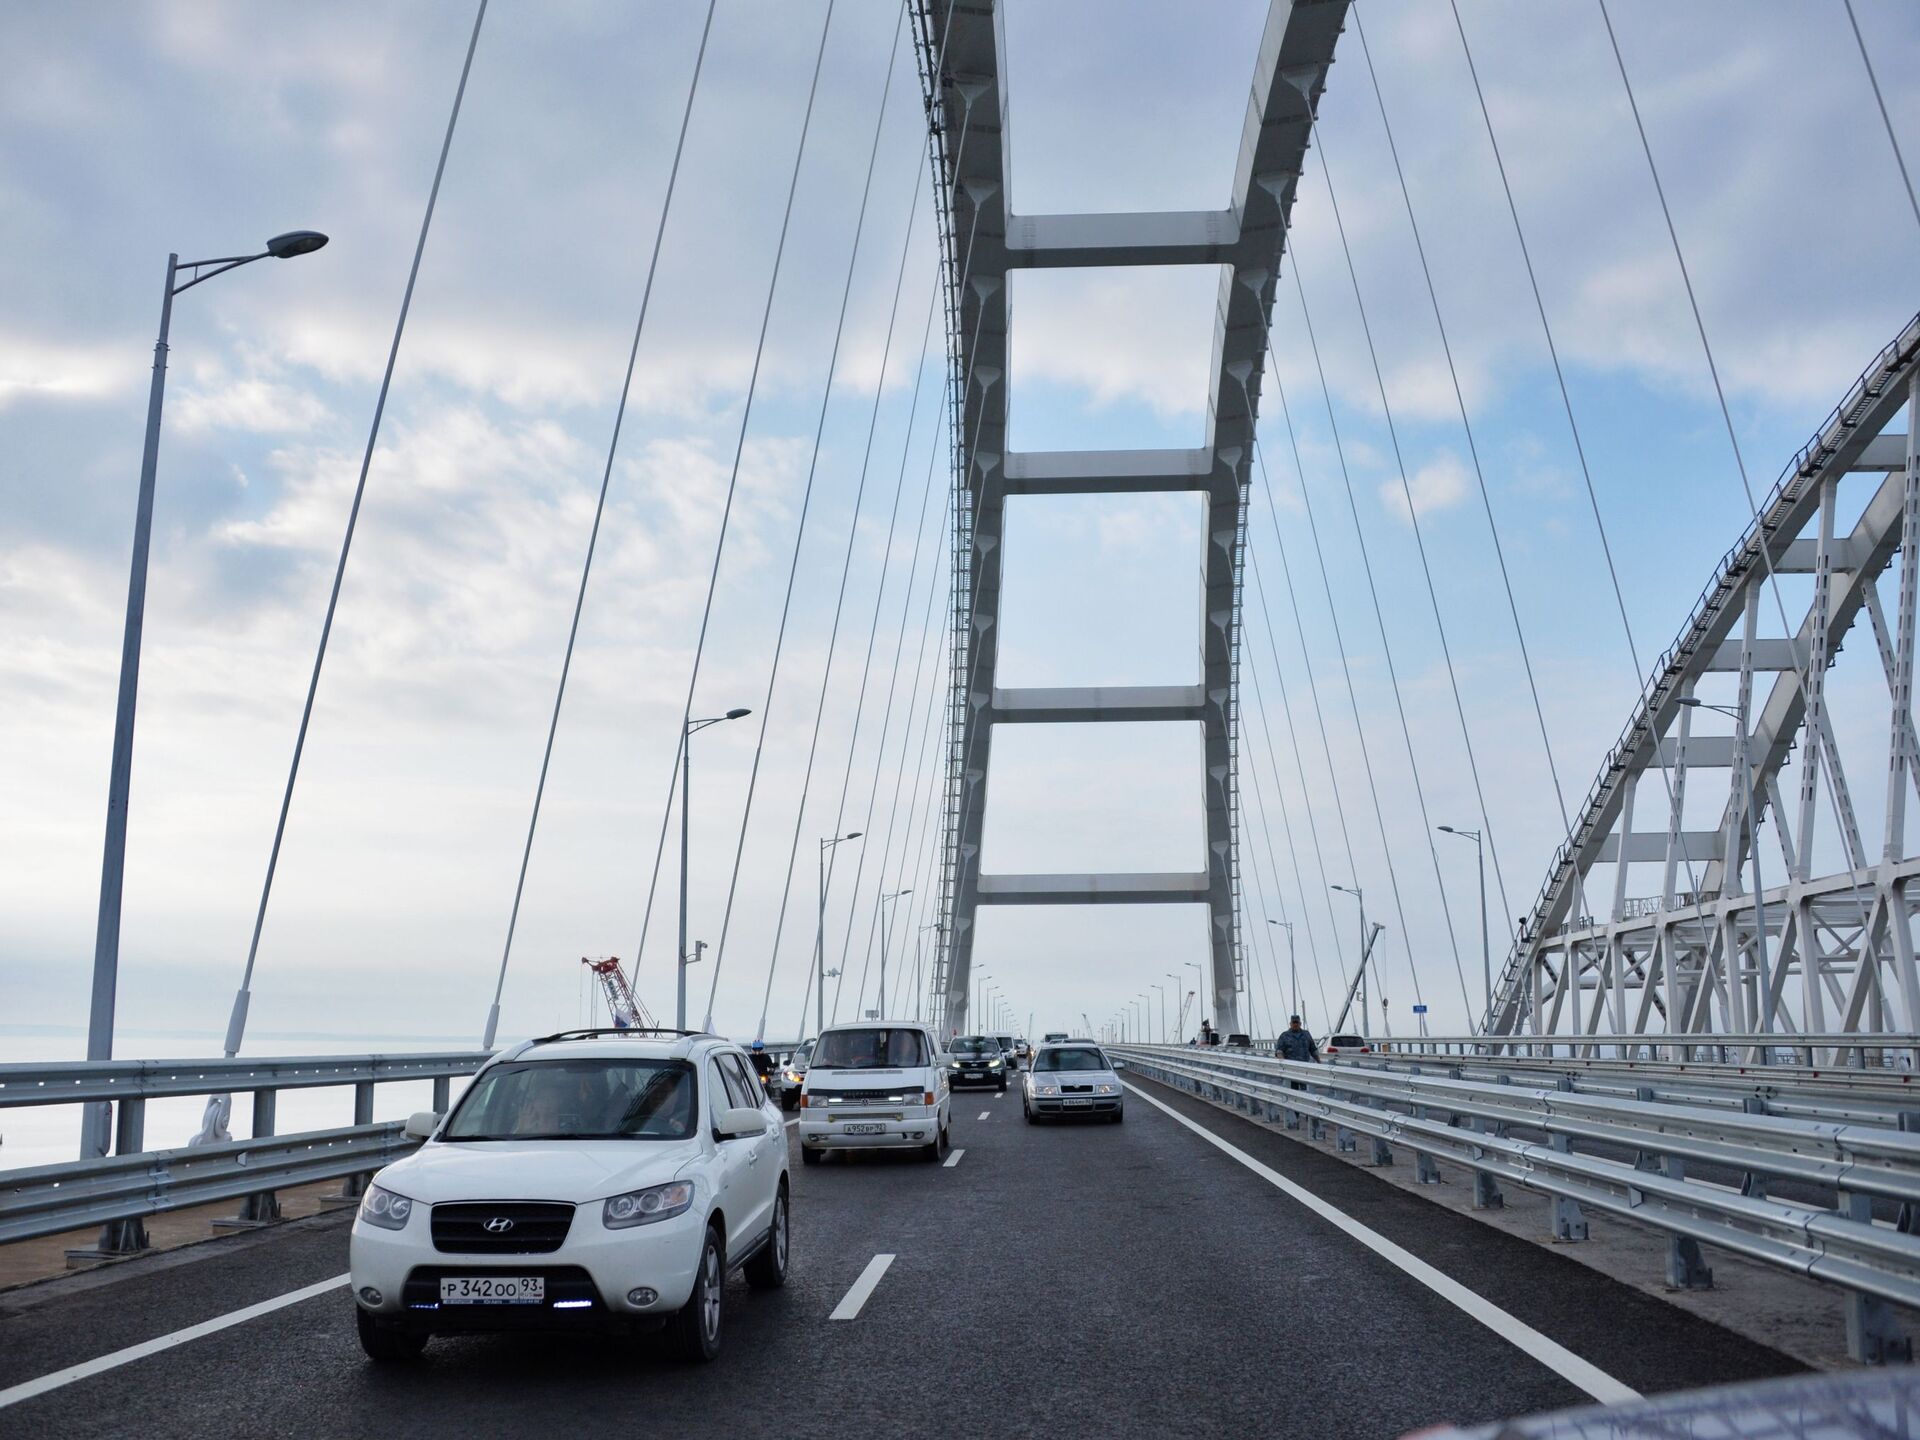 Едем через крымский мост. Крымский мост. Крымский мост автомобили. Крымский автомобильный мост сбоку. Машина едет по мосту.